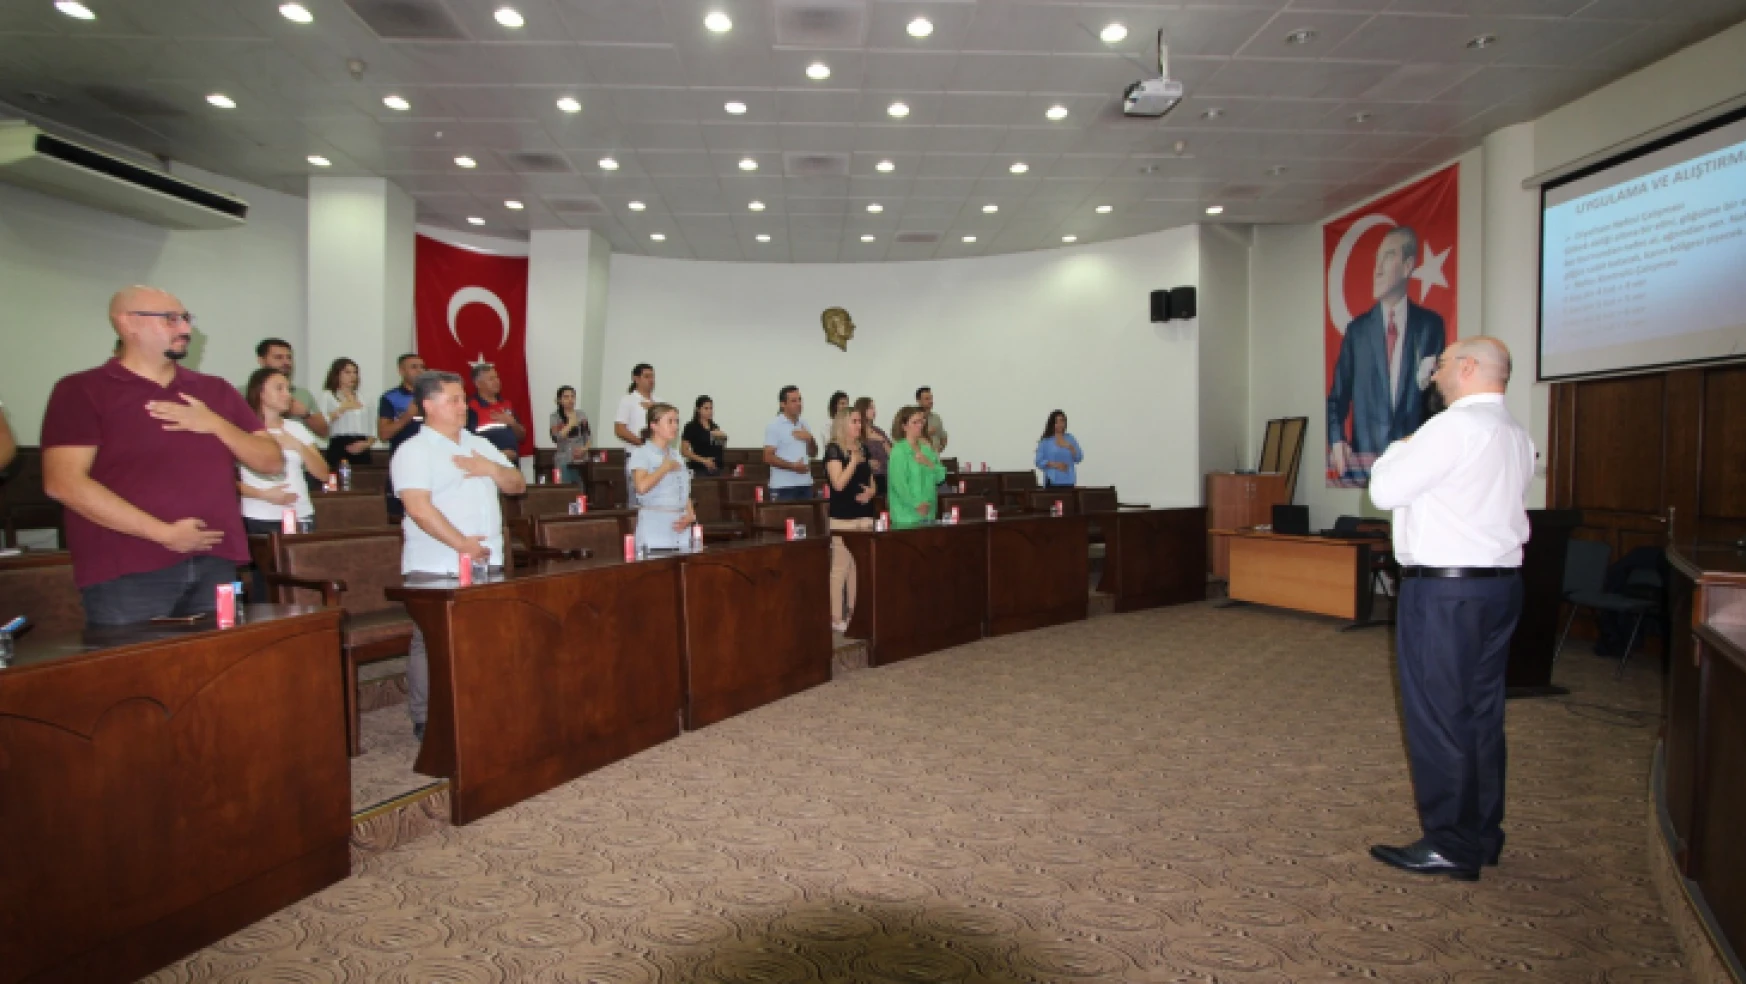 Nazilli Belediyesi personeline 'kurum içi iletişim' semineri verildi